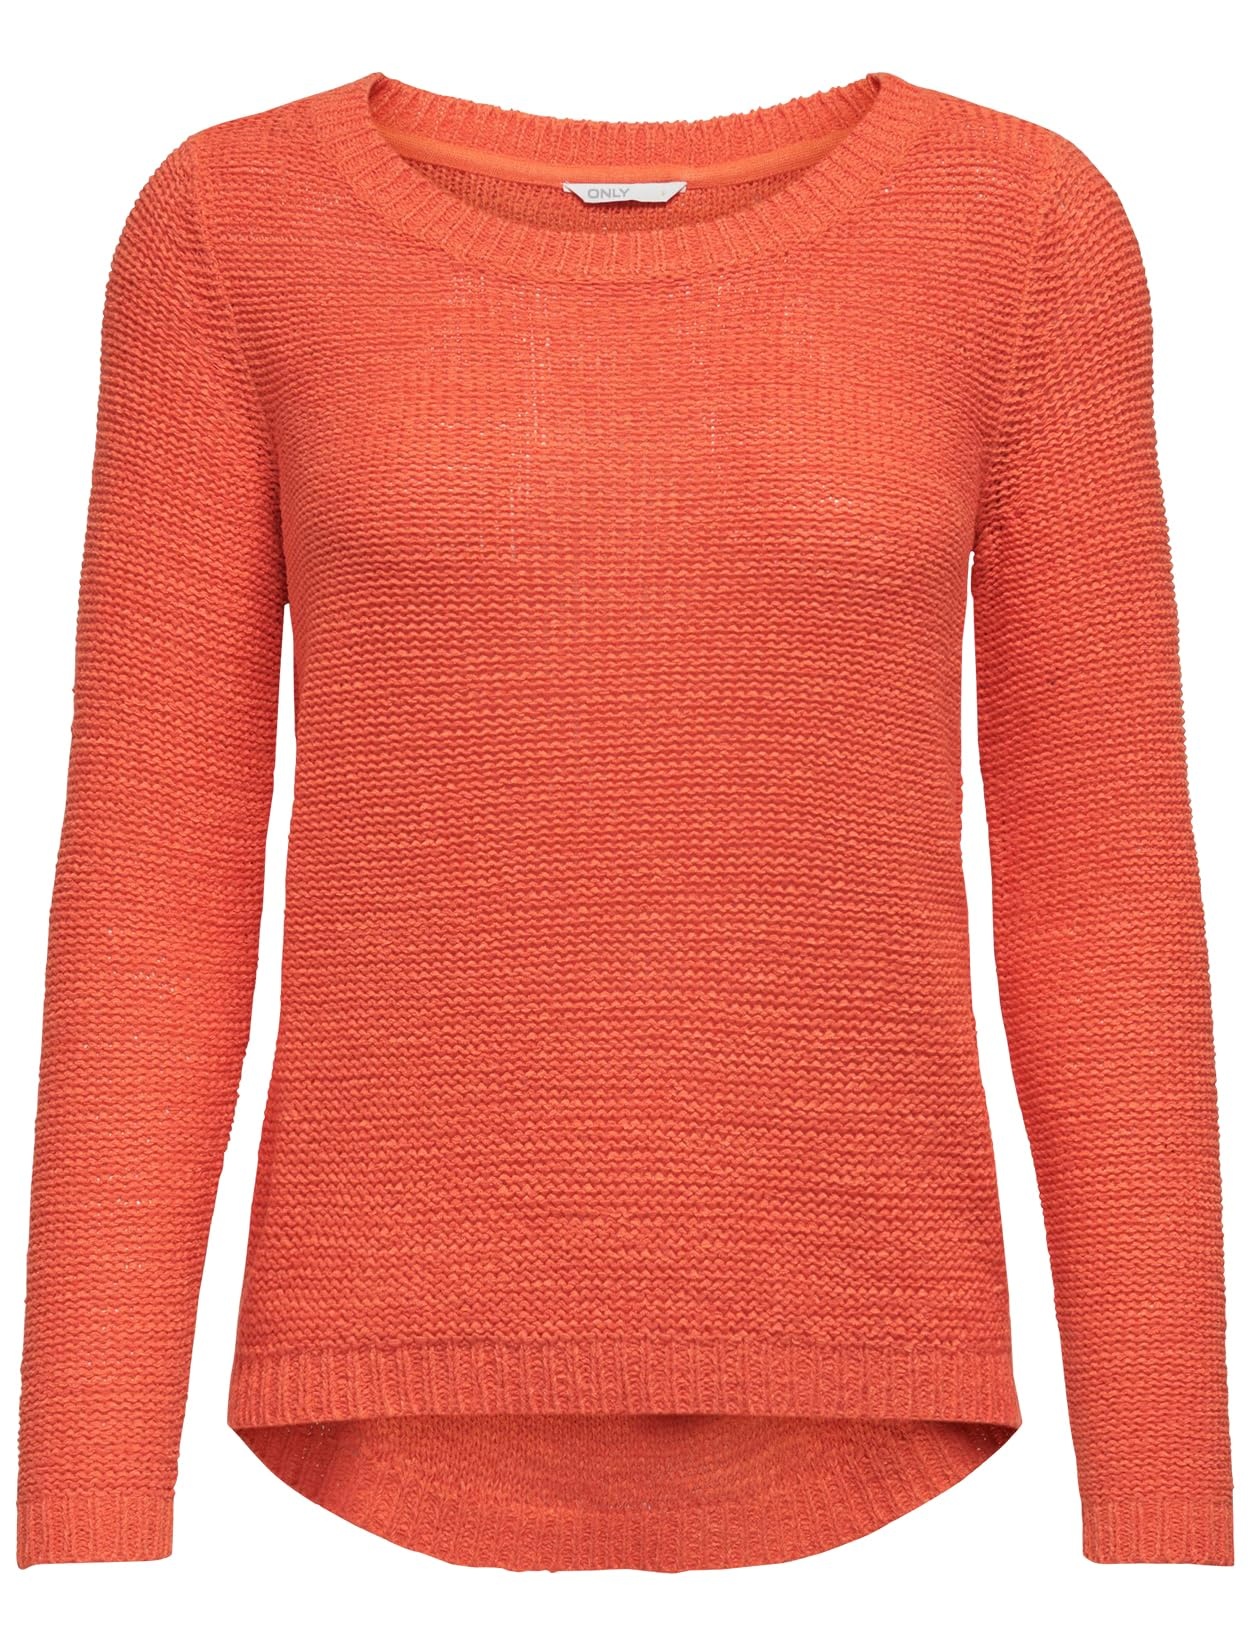 ONLY Damen Basic Strickpullover Einfarbiger Knitted Stretch Sweater Langarm Rundhals Shirt ONLGEENA, Farben:Orange, Größe:S